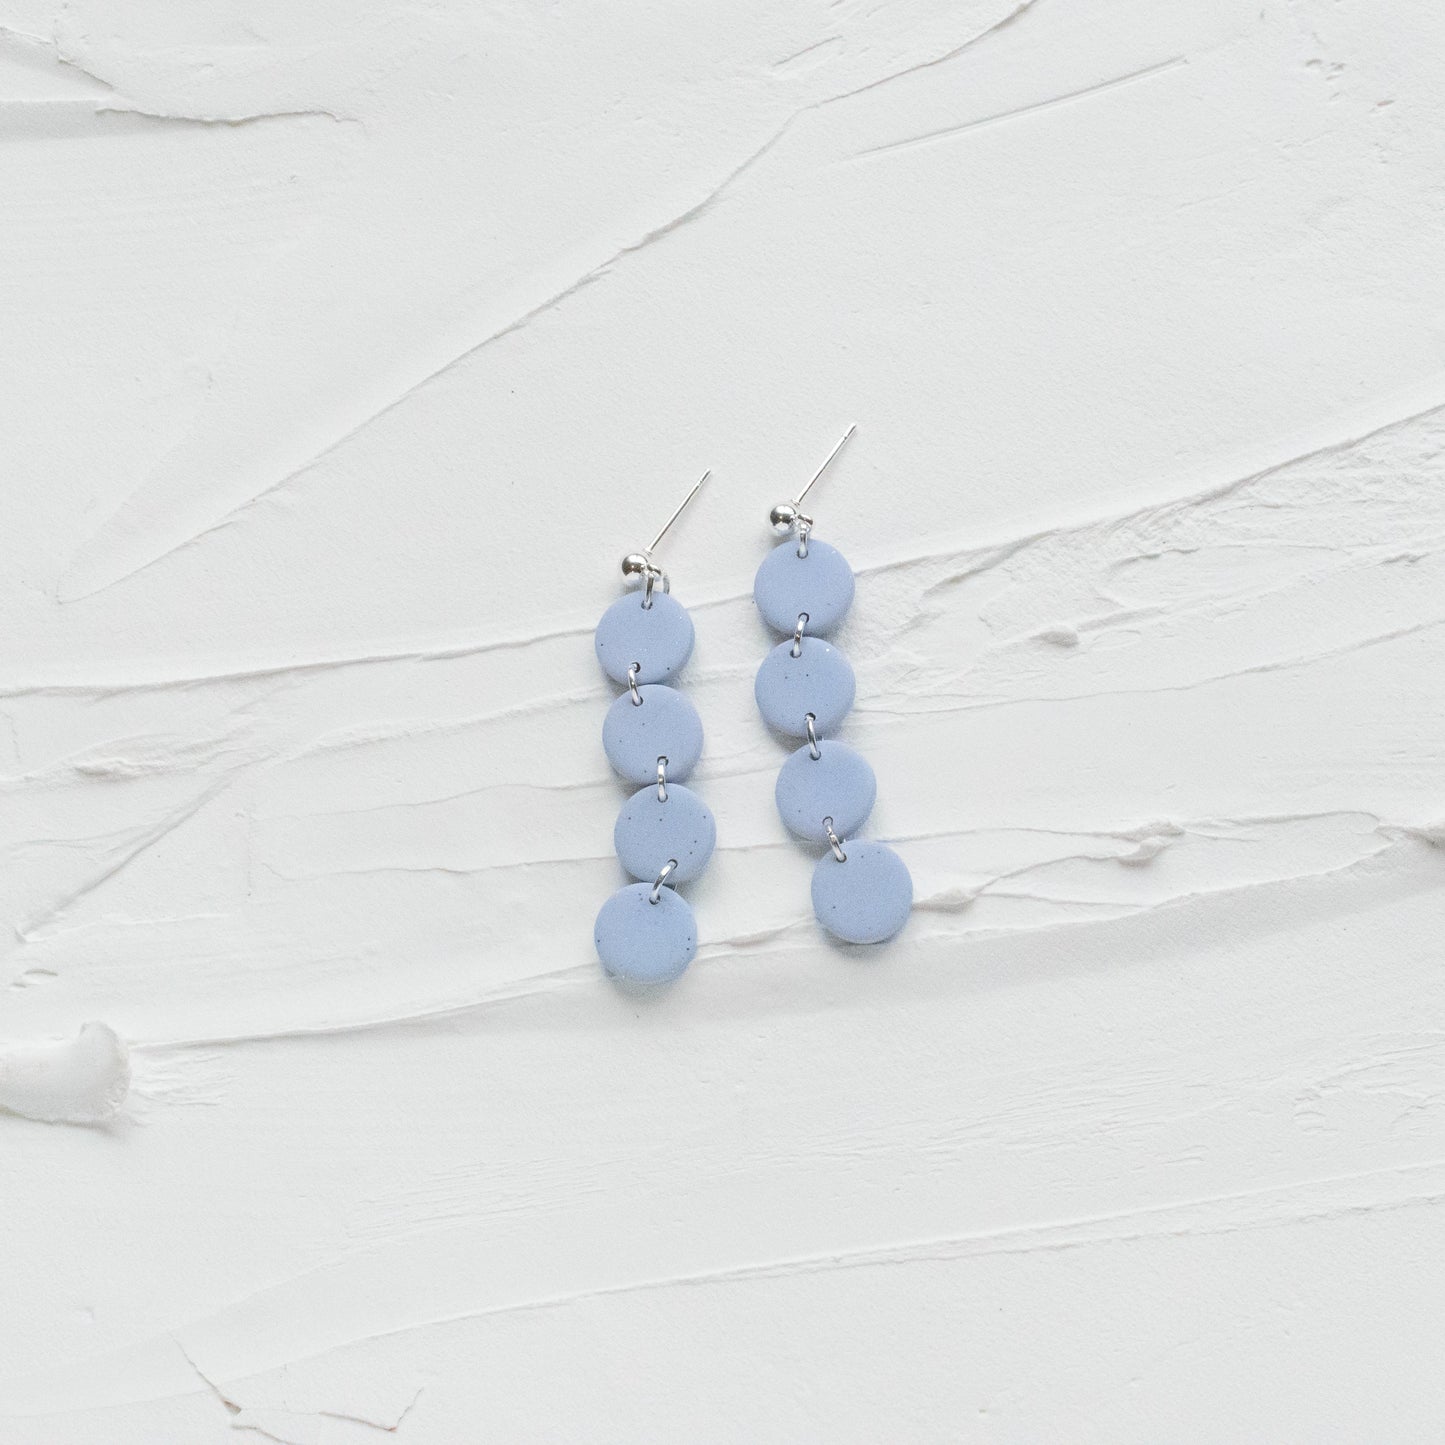 Mini Tiered Glittery Pale Blue Earrings - Claymore NZ - Earrings